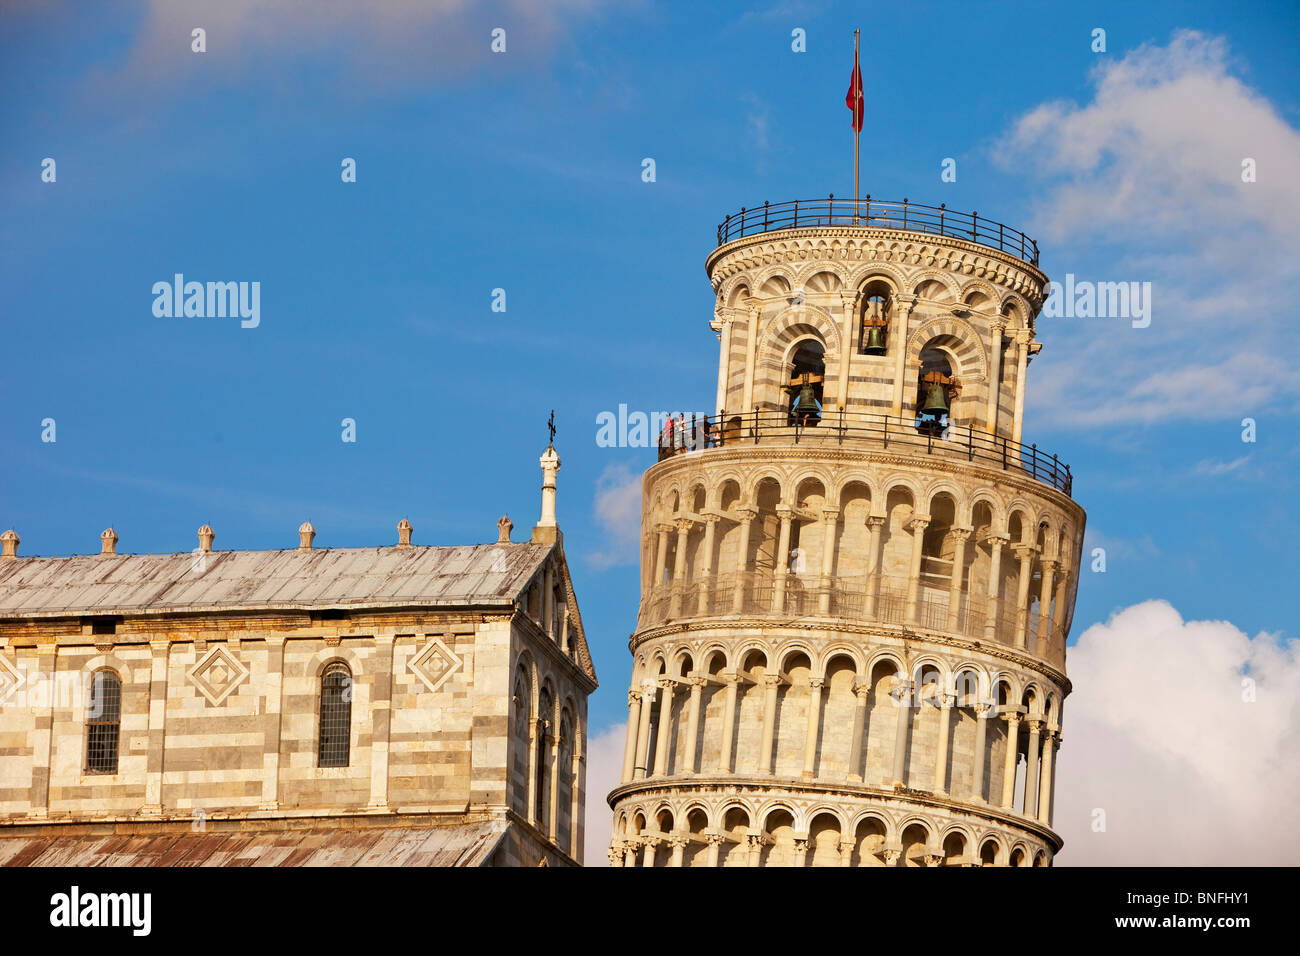 Pisa's leaning tower and Duomo - Santa Maria Assunta, Tuscany Italy Stock Photo